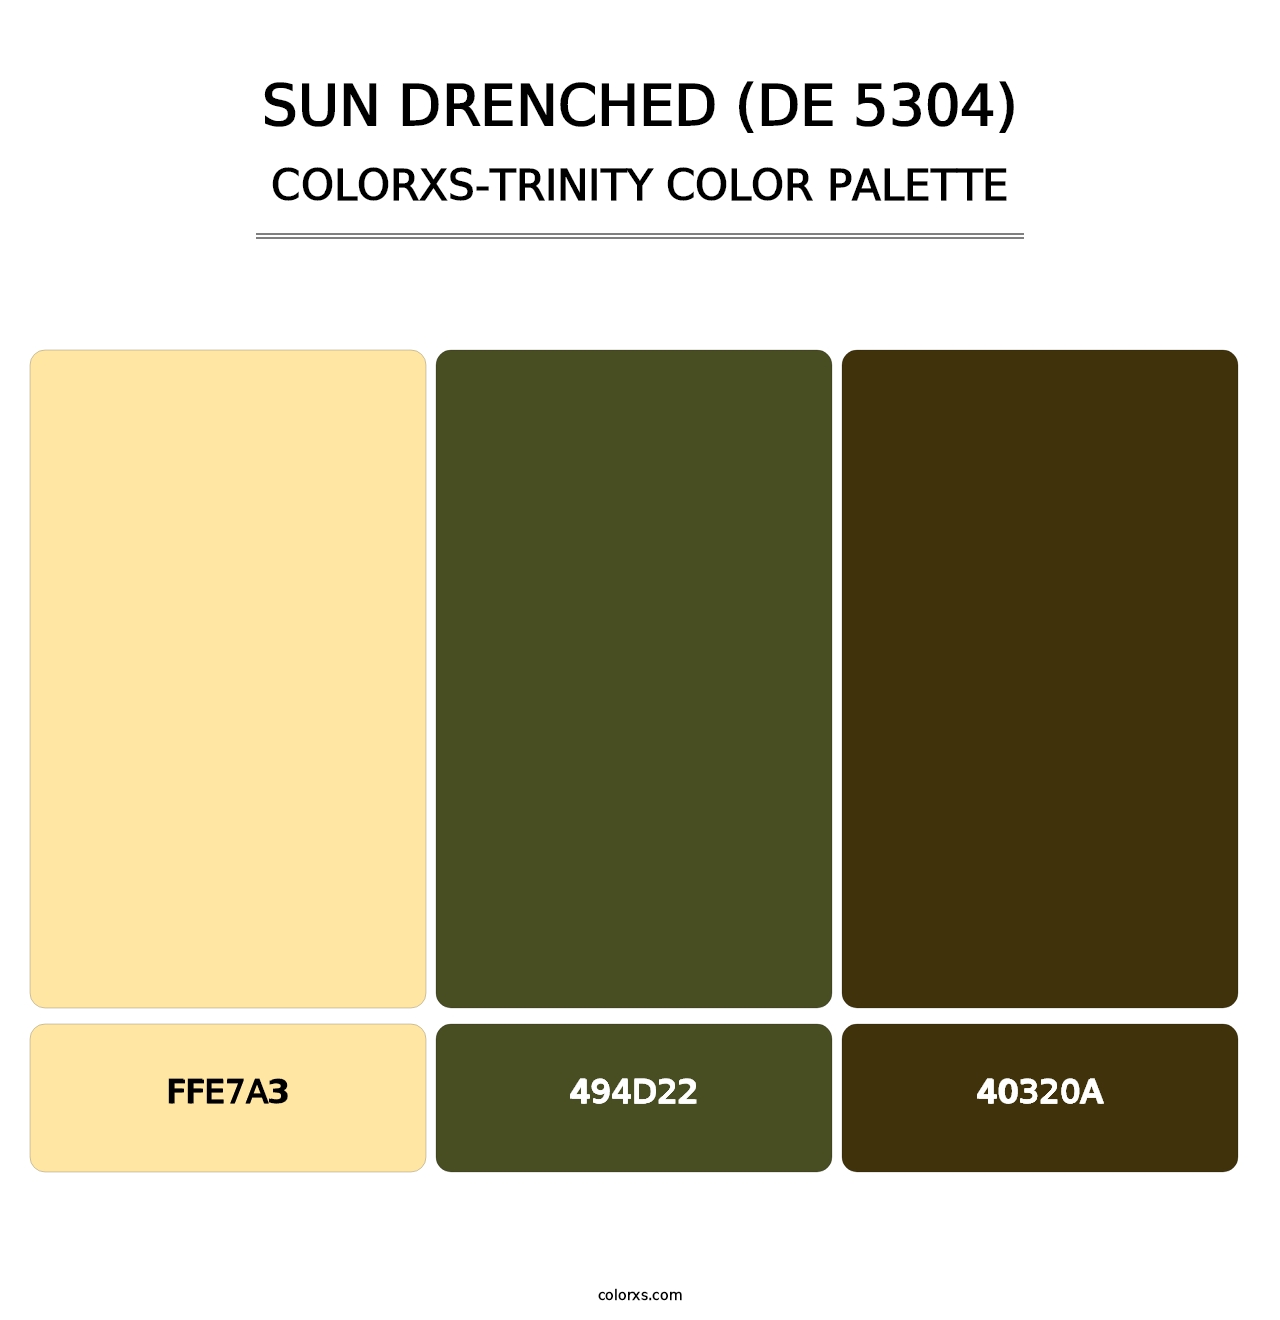 Sun Drenched (DE 5304) - Colorxs Trinity Palette